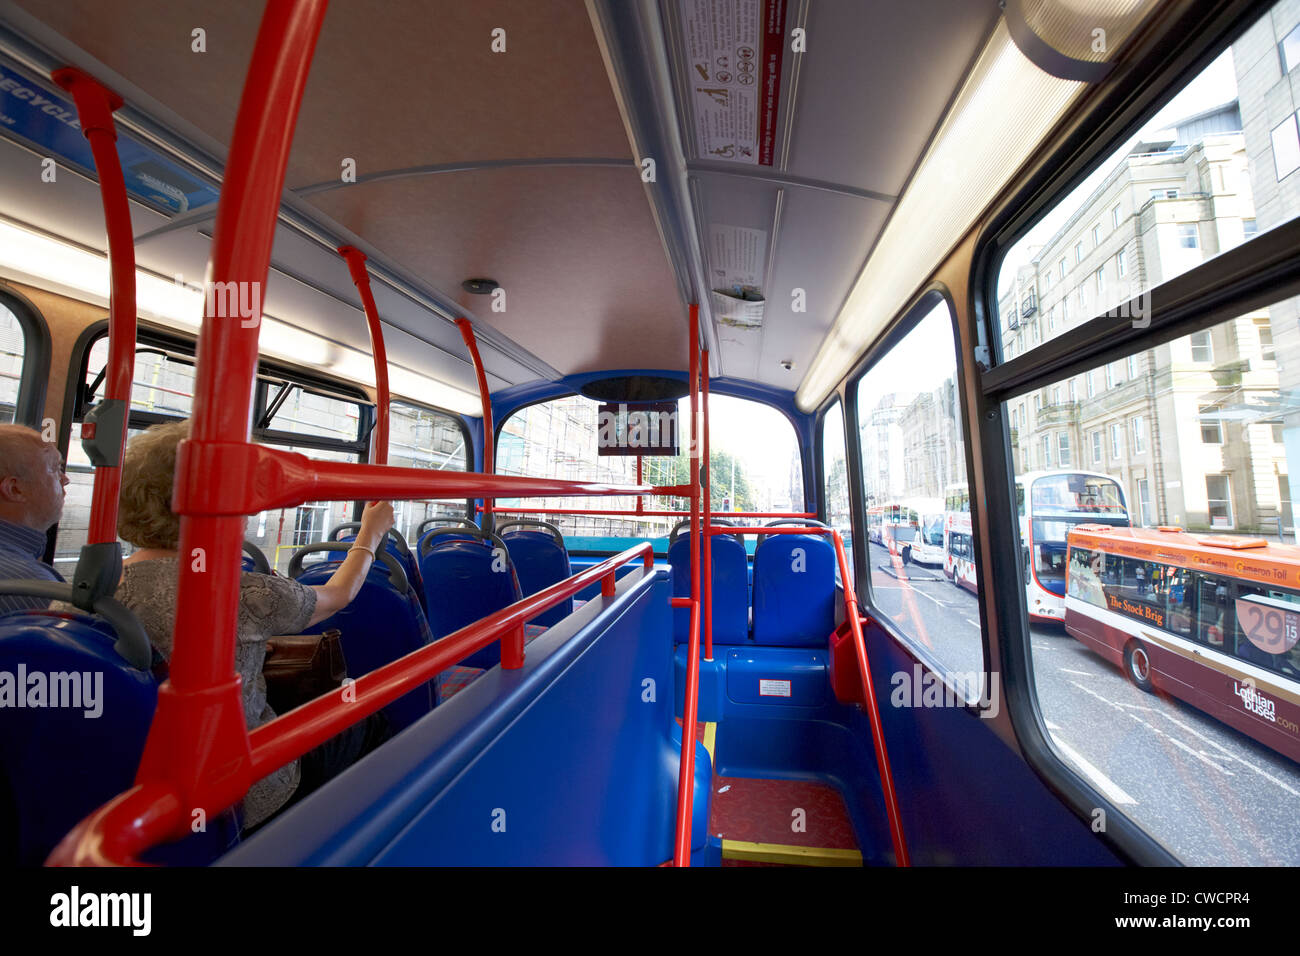 À bord d'un bus Lothian dans le centre-ville d'Édimbourg en Écosse Royaume-Uni Royaume-Uni Banque D'Images